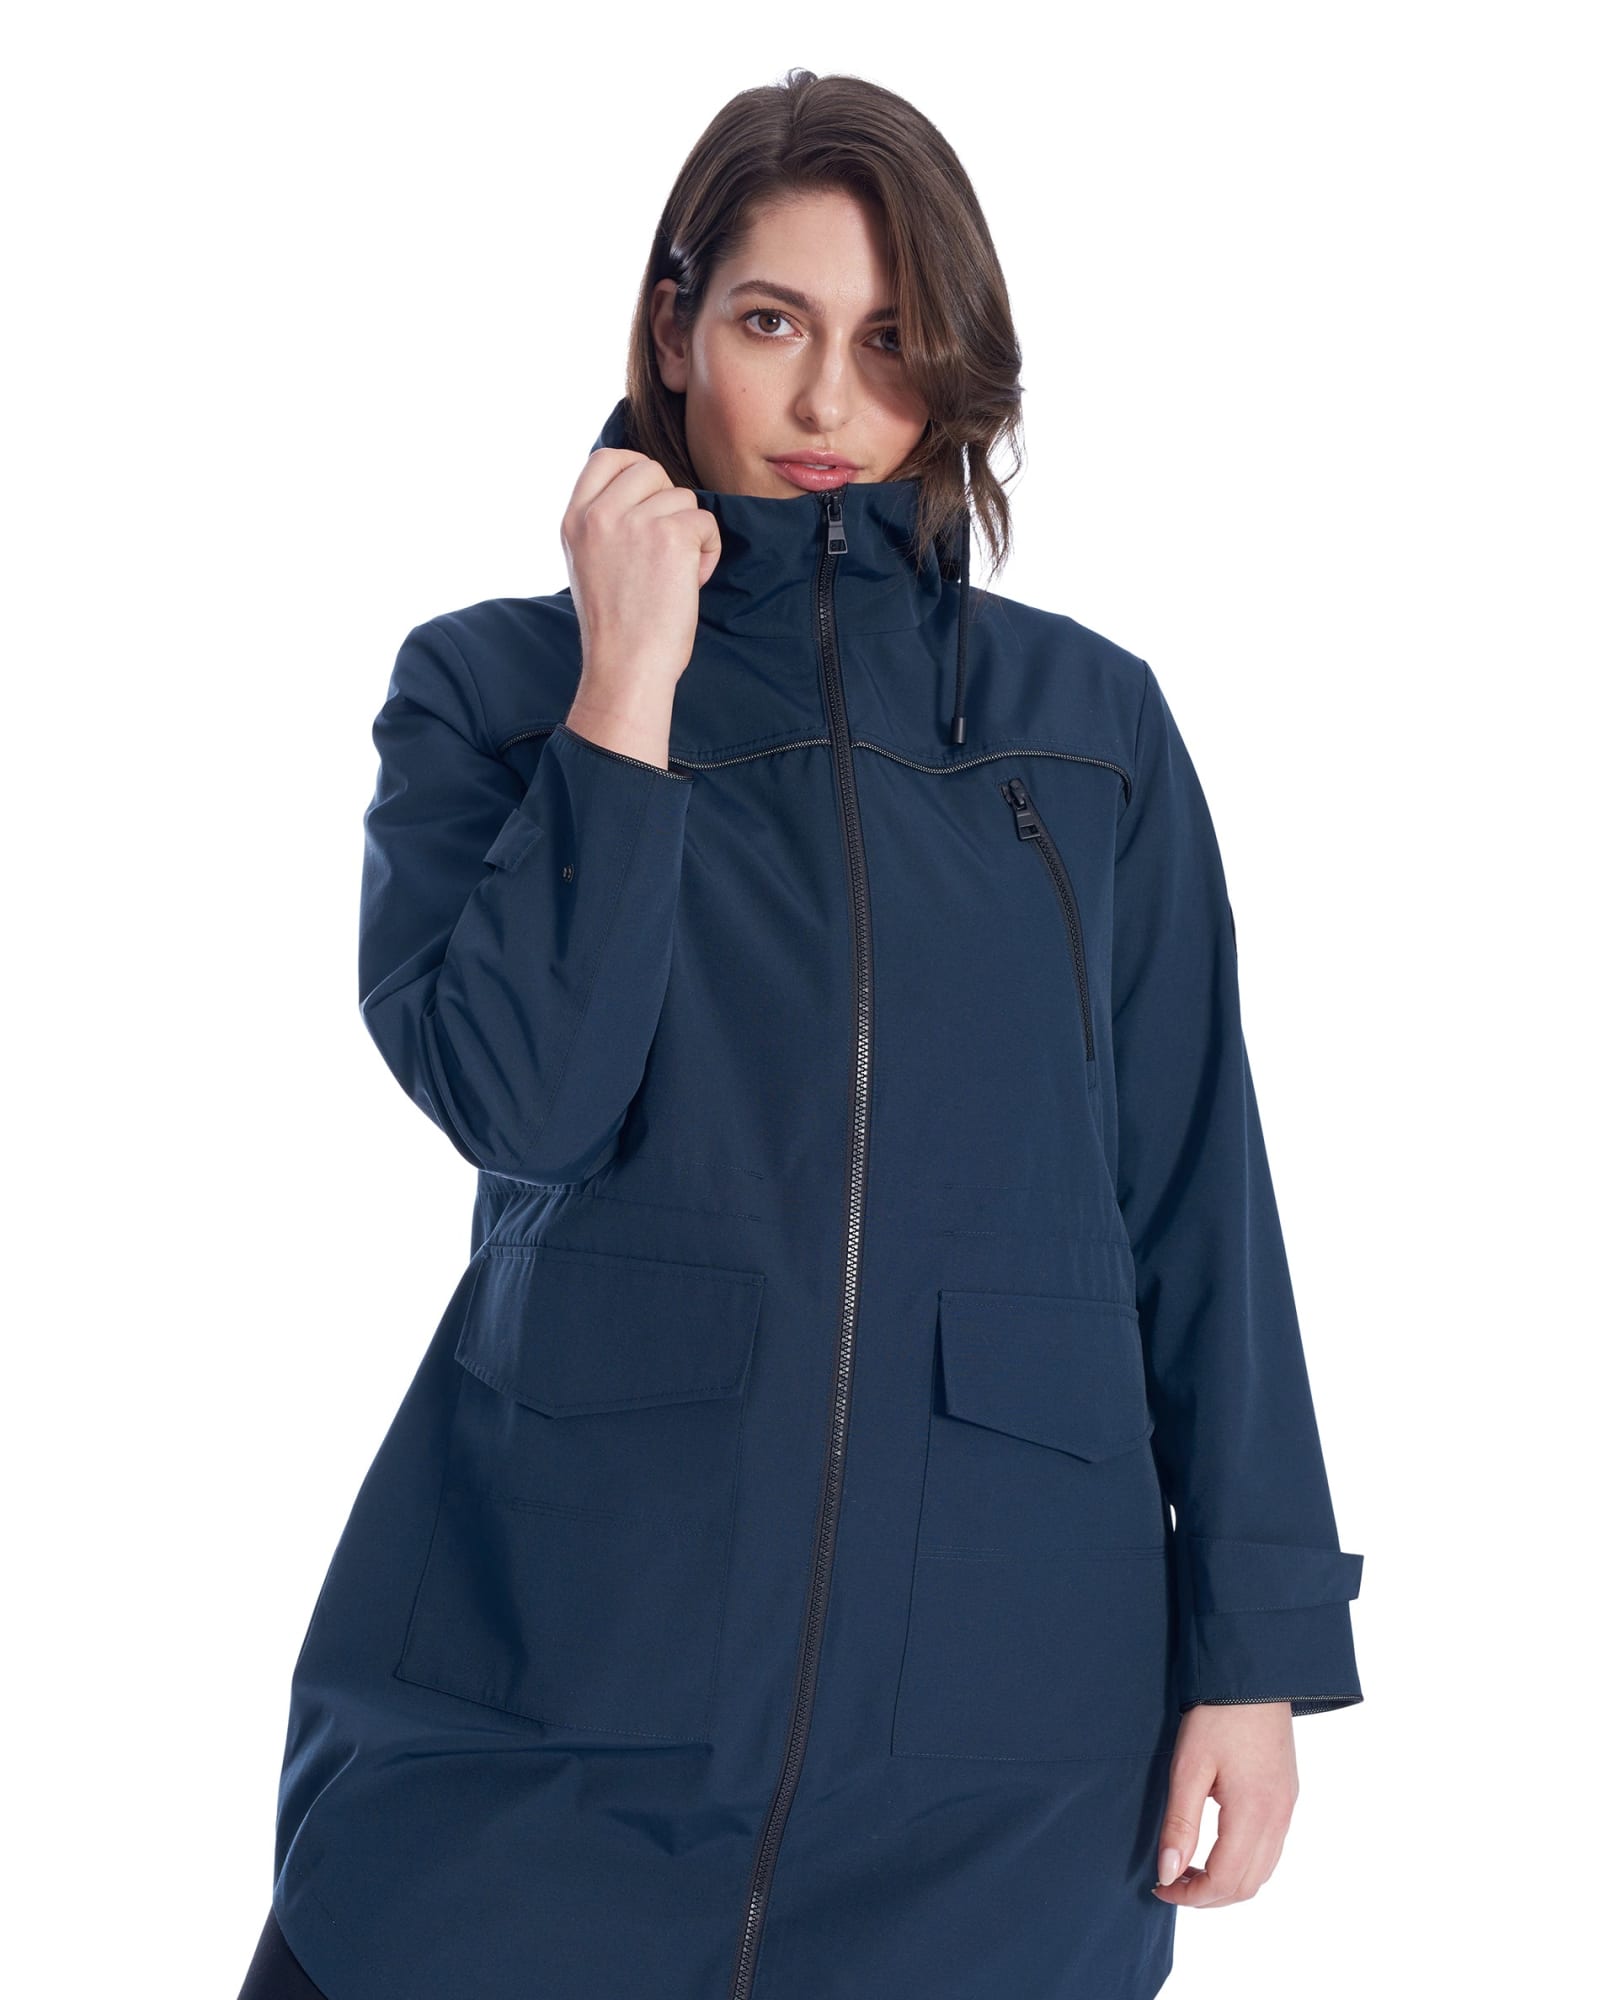 Plus Size Rain Coat For Women